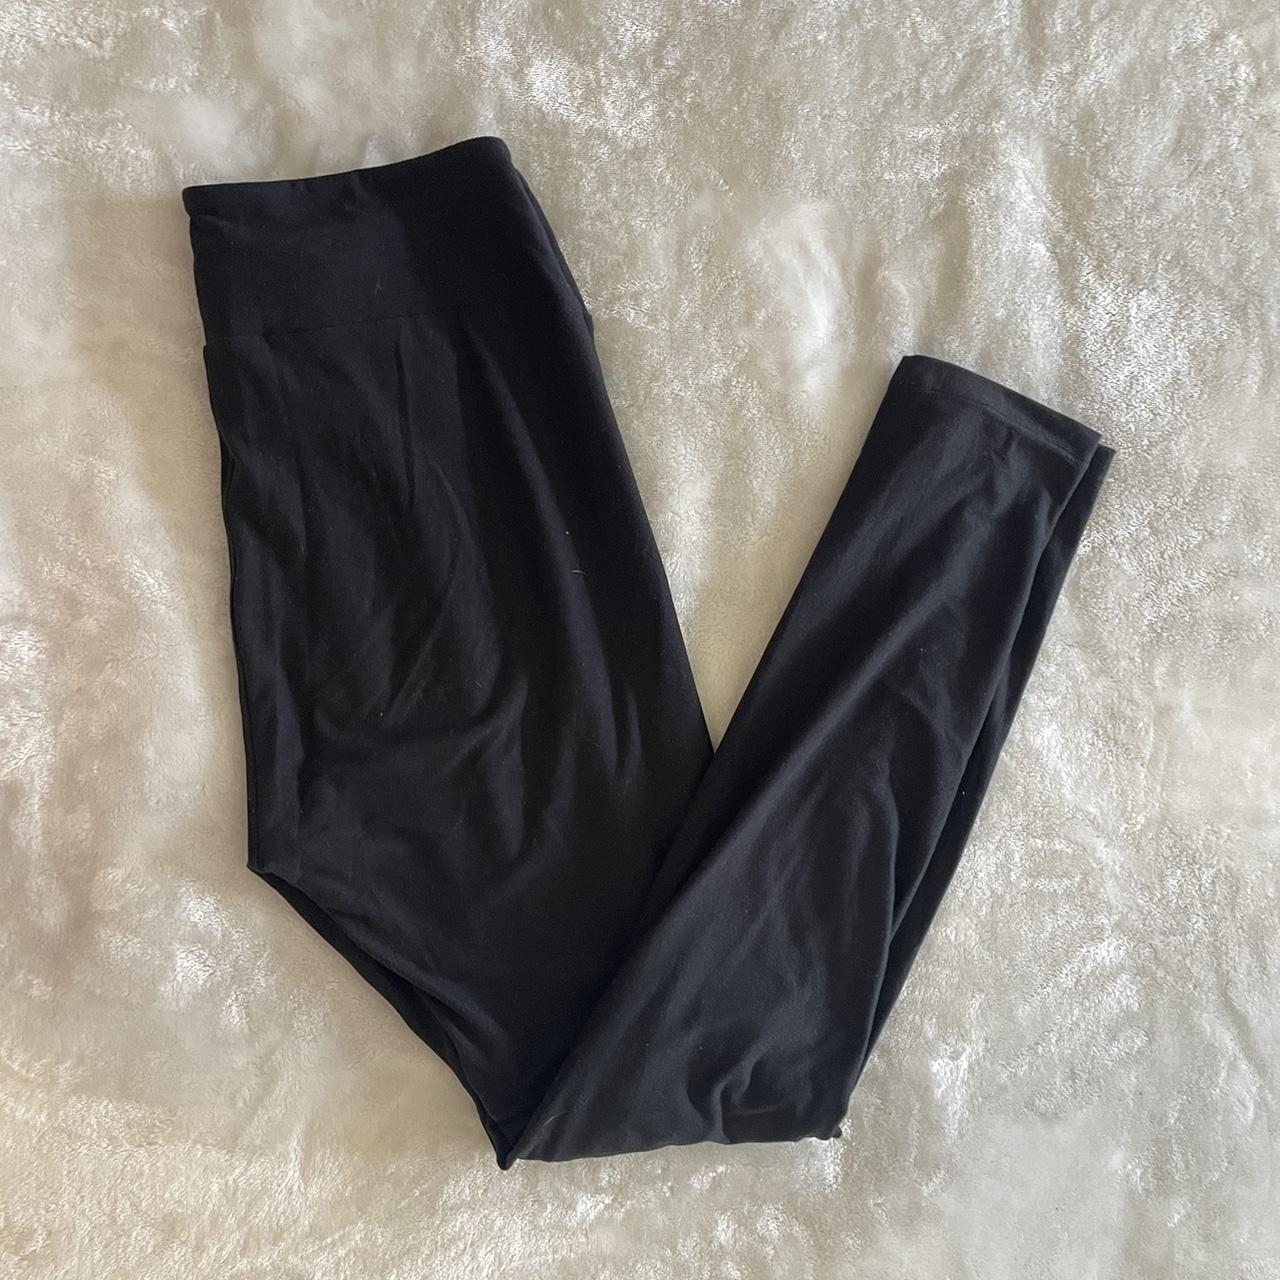 Lularoe black leggings, one size , stretchy